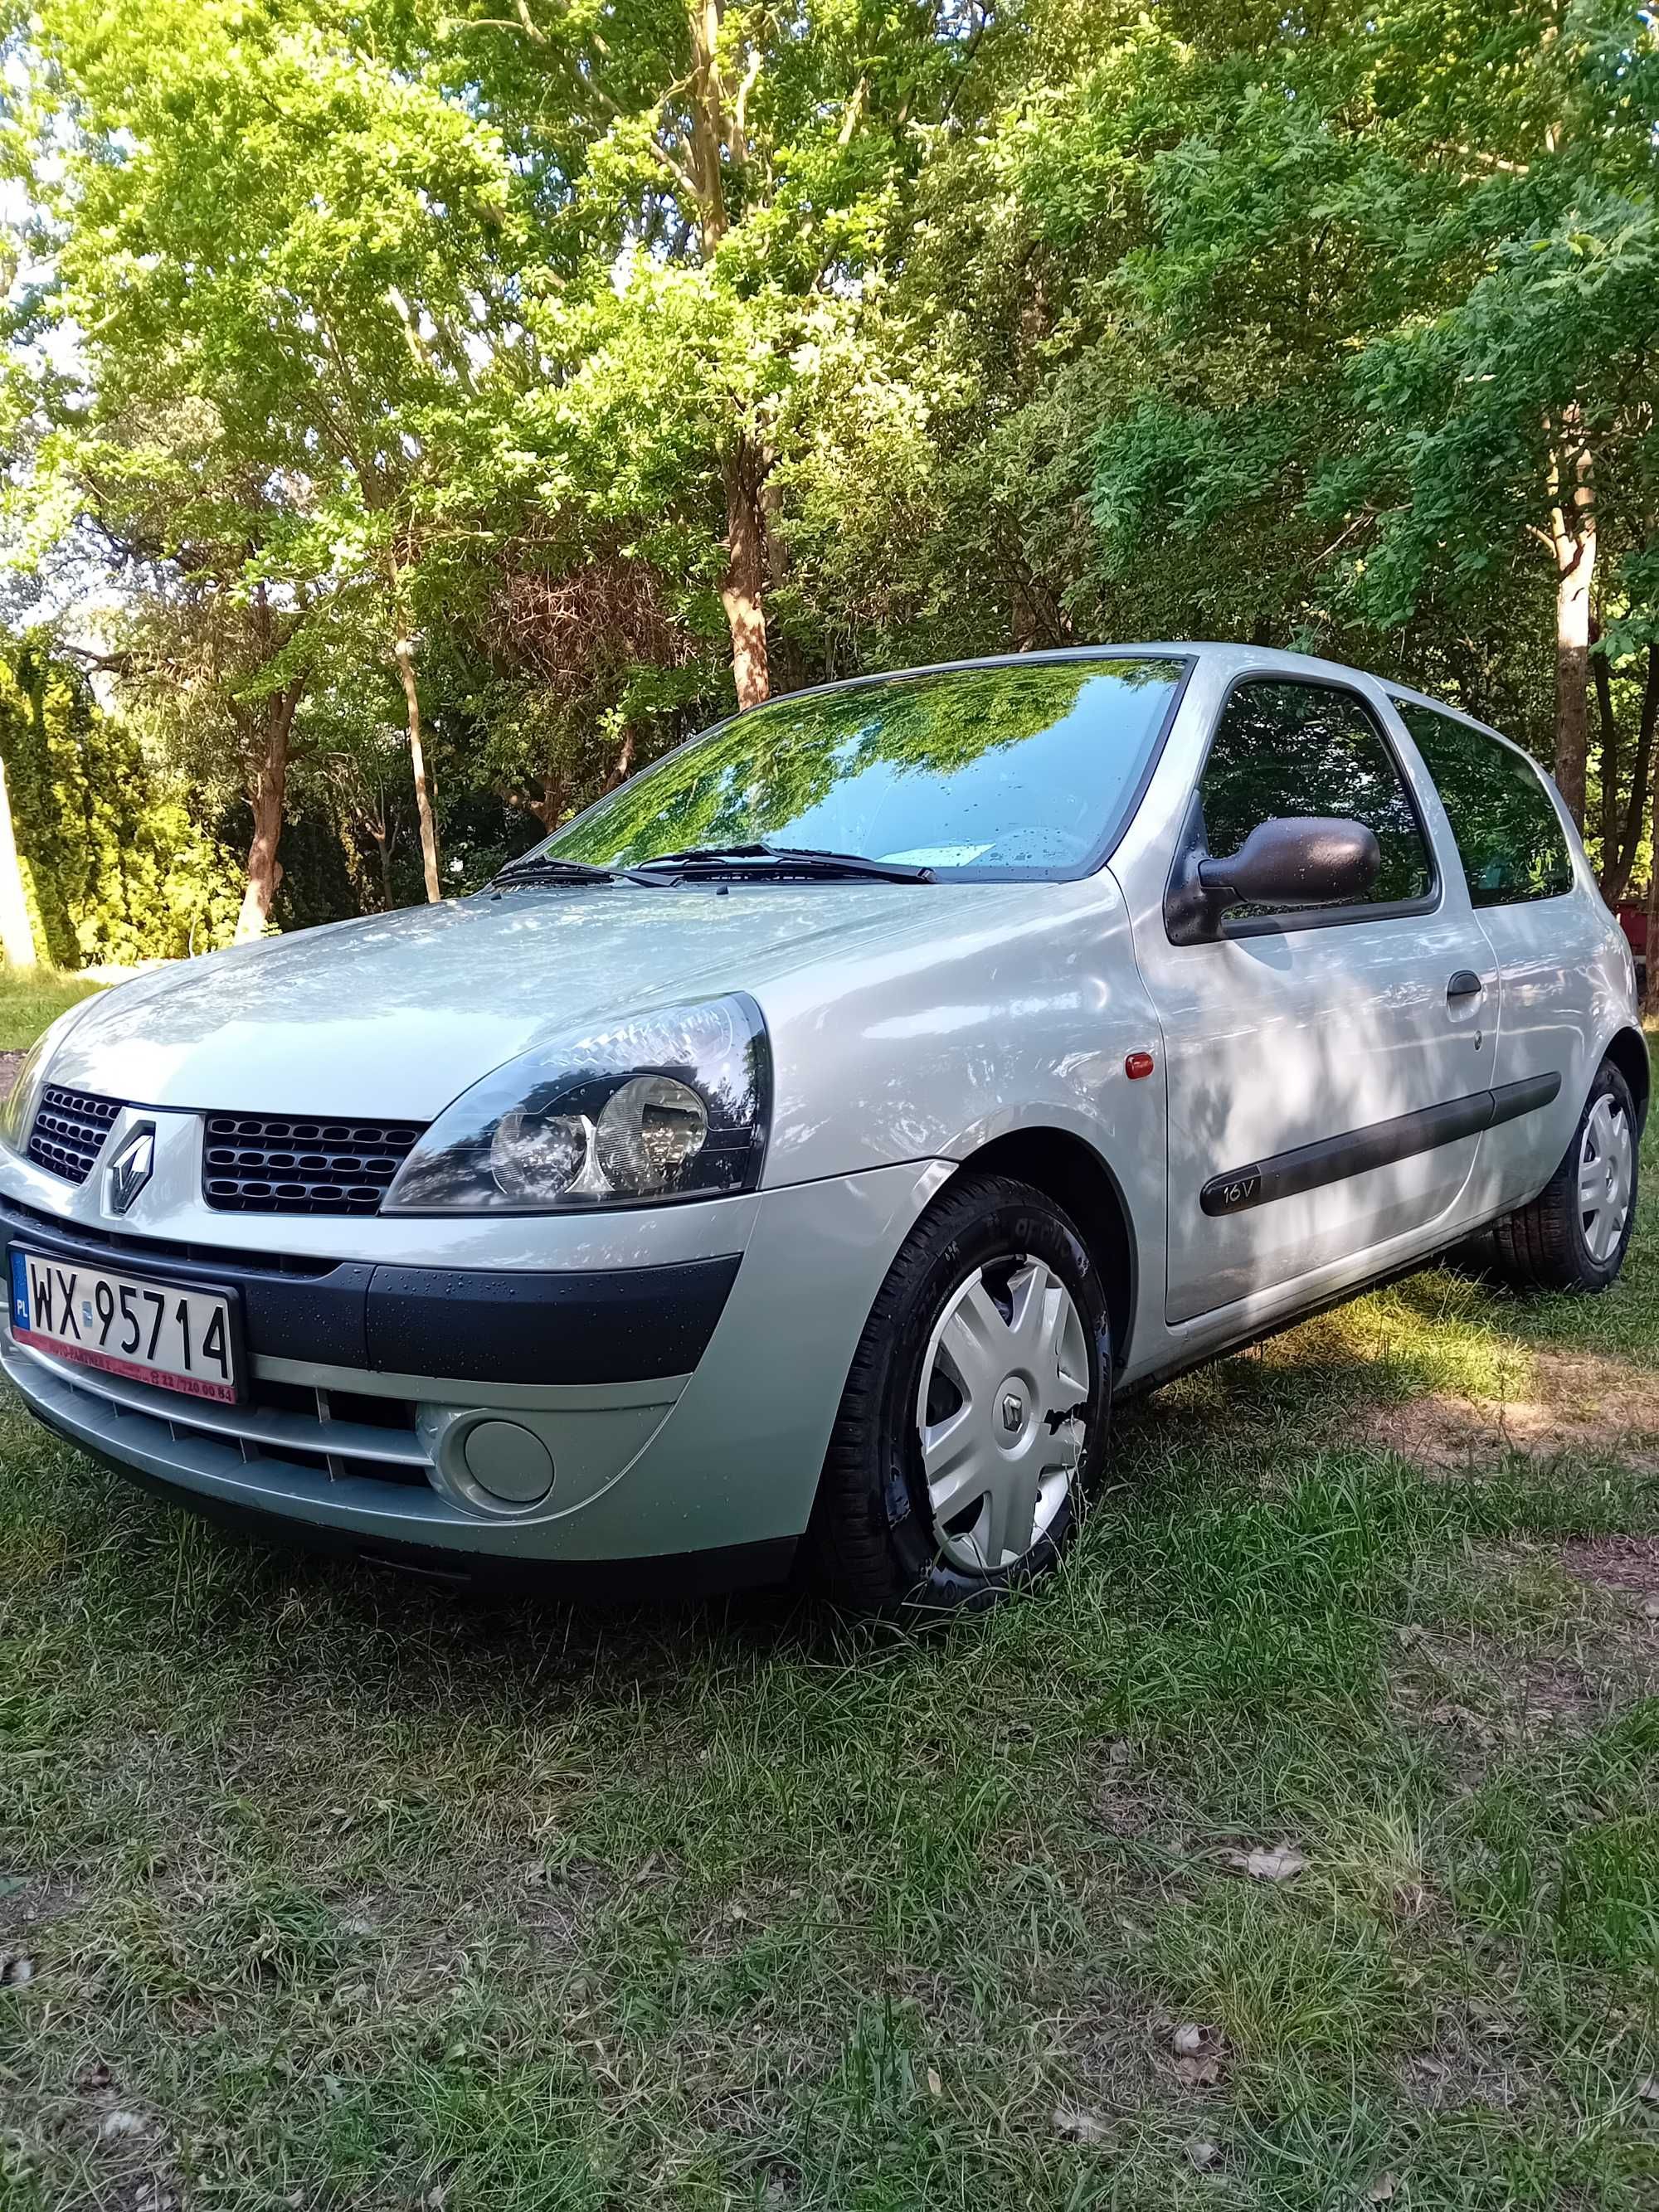 Renault Clio 1.2 benzyna 72000km!!!